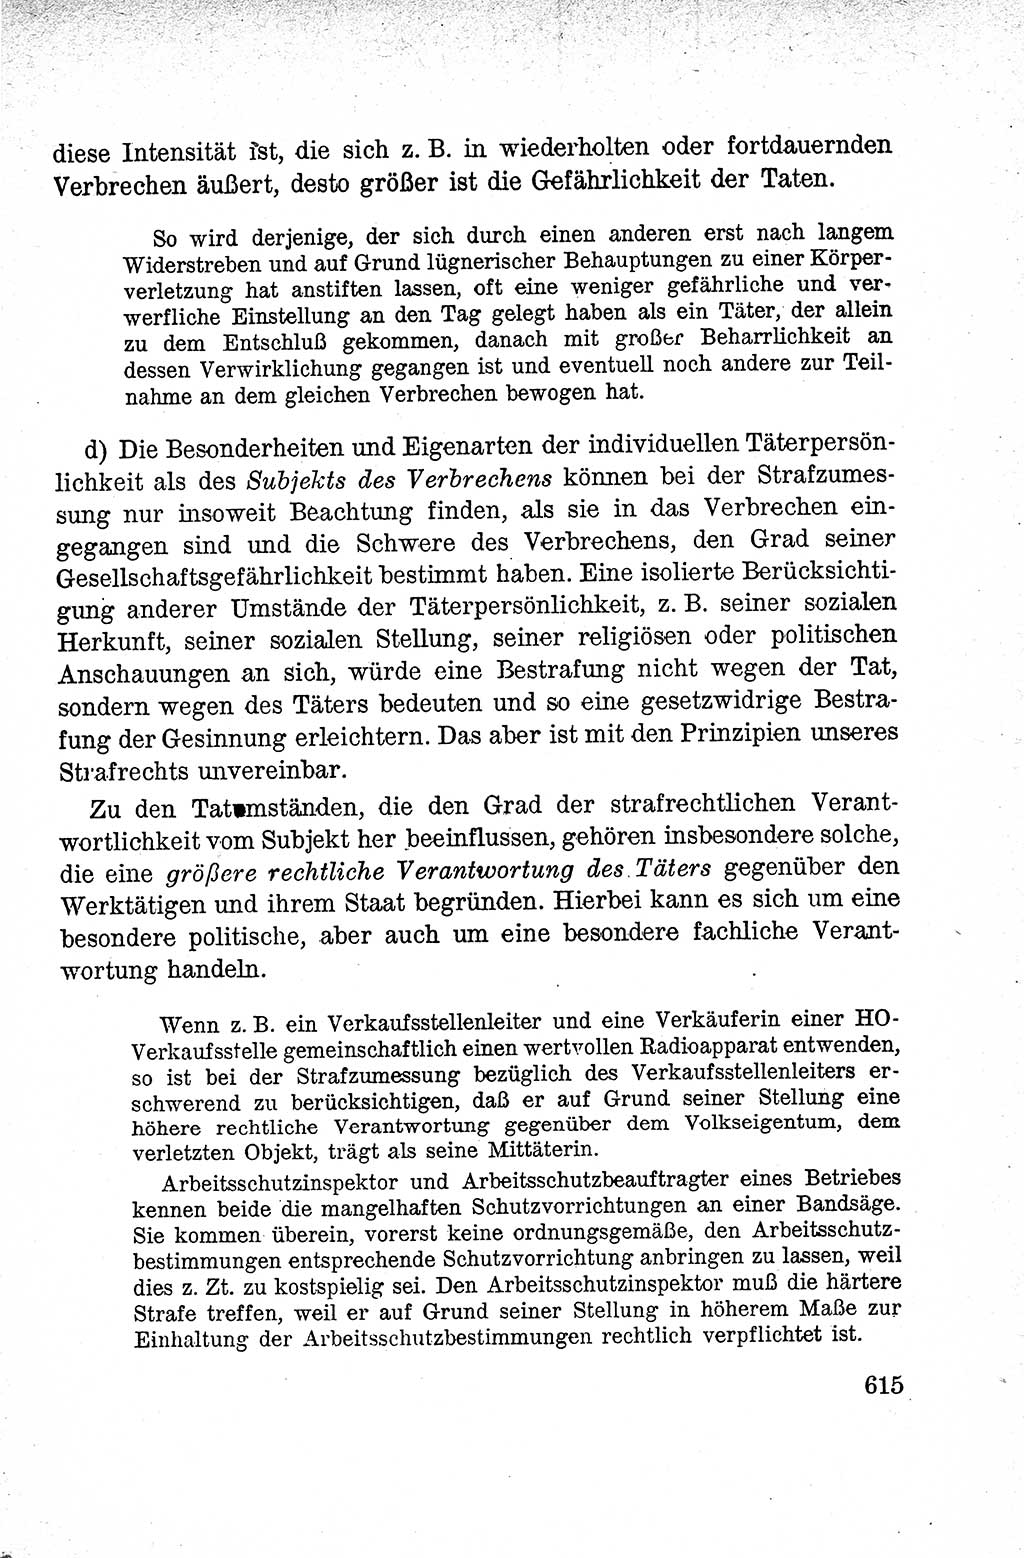 Lehrbuch des Strafrechts der Deutschen Demokratischen Republik (DDR), Allgemeiner Teil 1959, Seite 615 (Lb. Strafr. DDR AT 1959, S. 615)